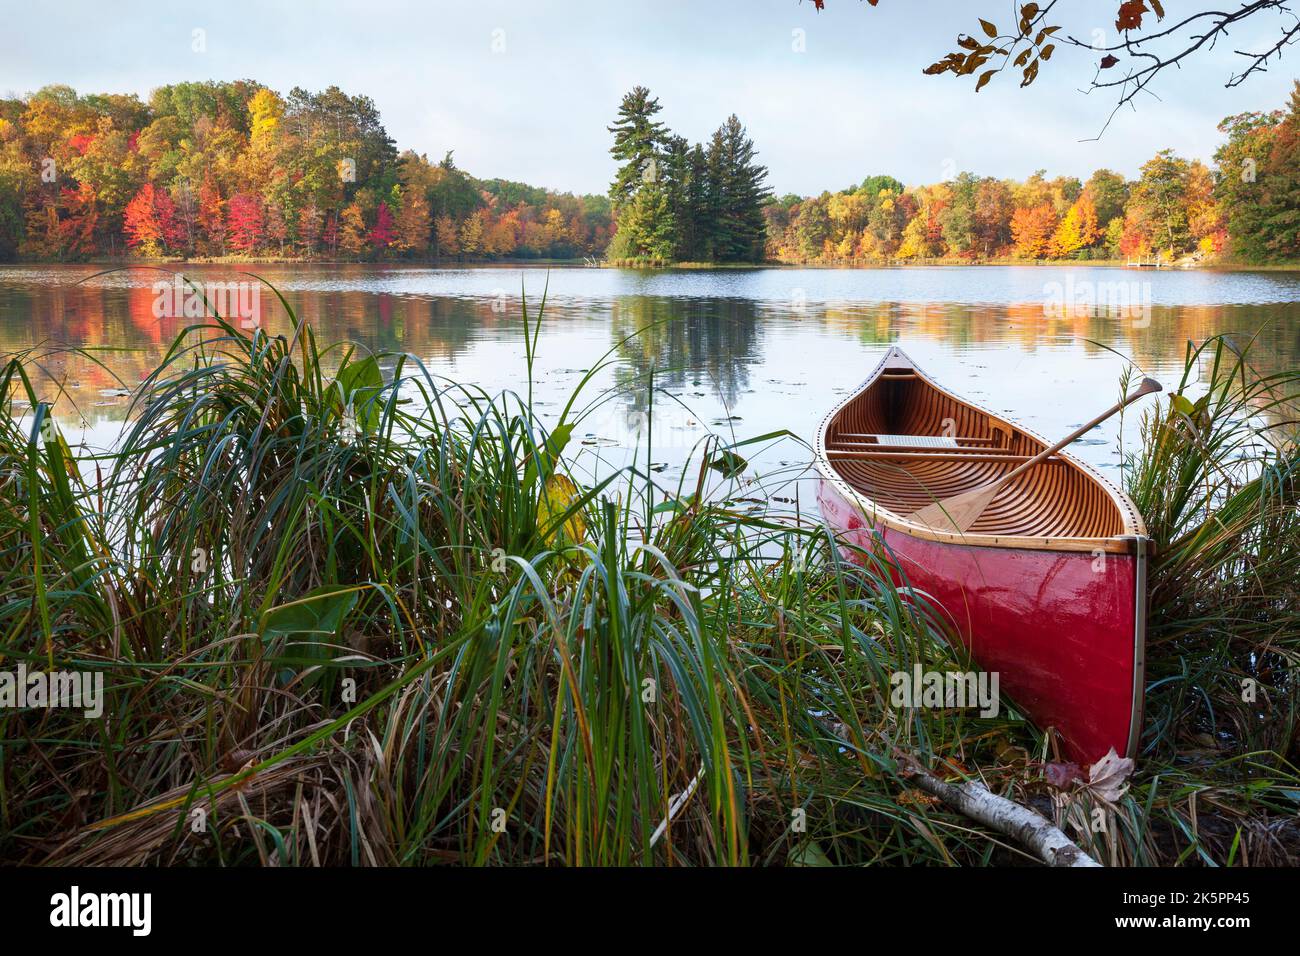 Rotes Holzkanu am Ufer des Sees mit Bäumen in Herbstfarbe und einer kleinen Insel Stockfoto